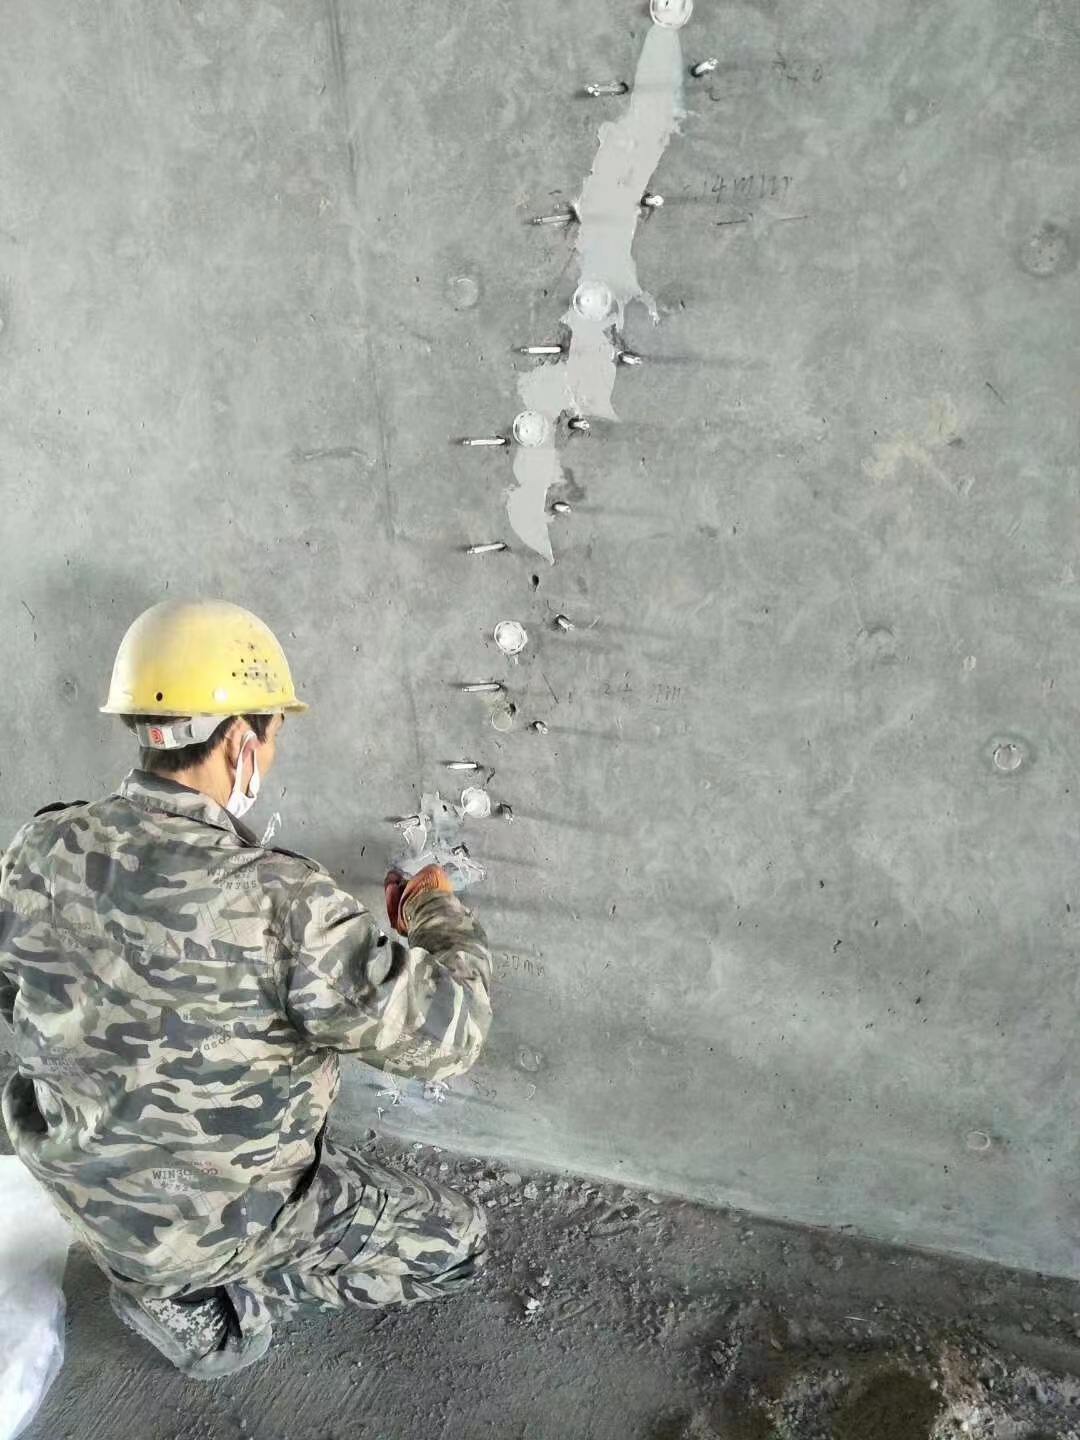 乾安混凝土楼板裂缝加固施工的方案